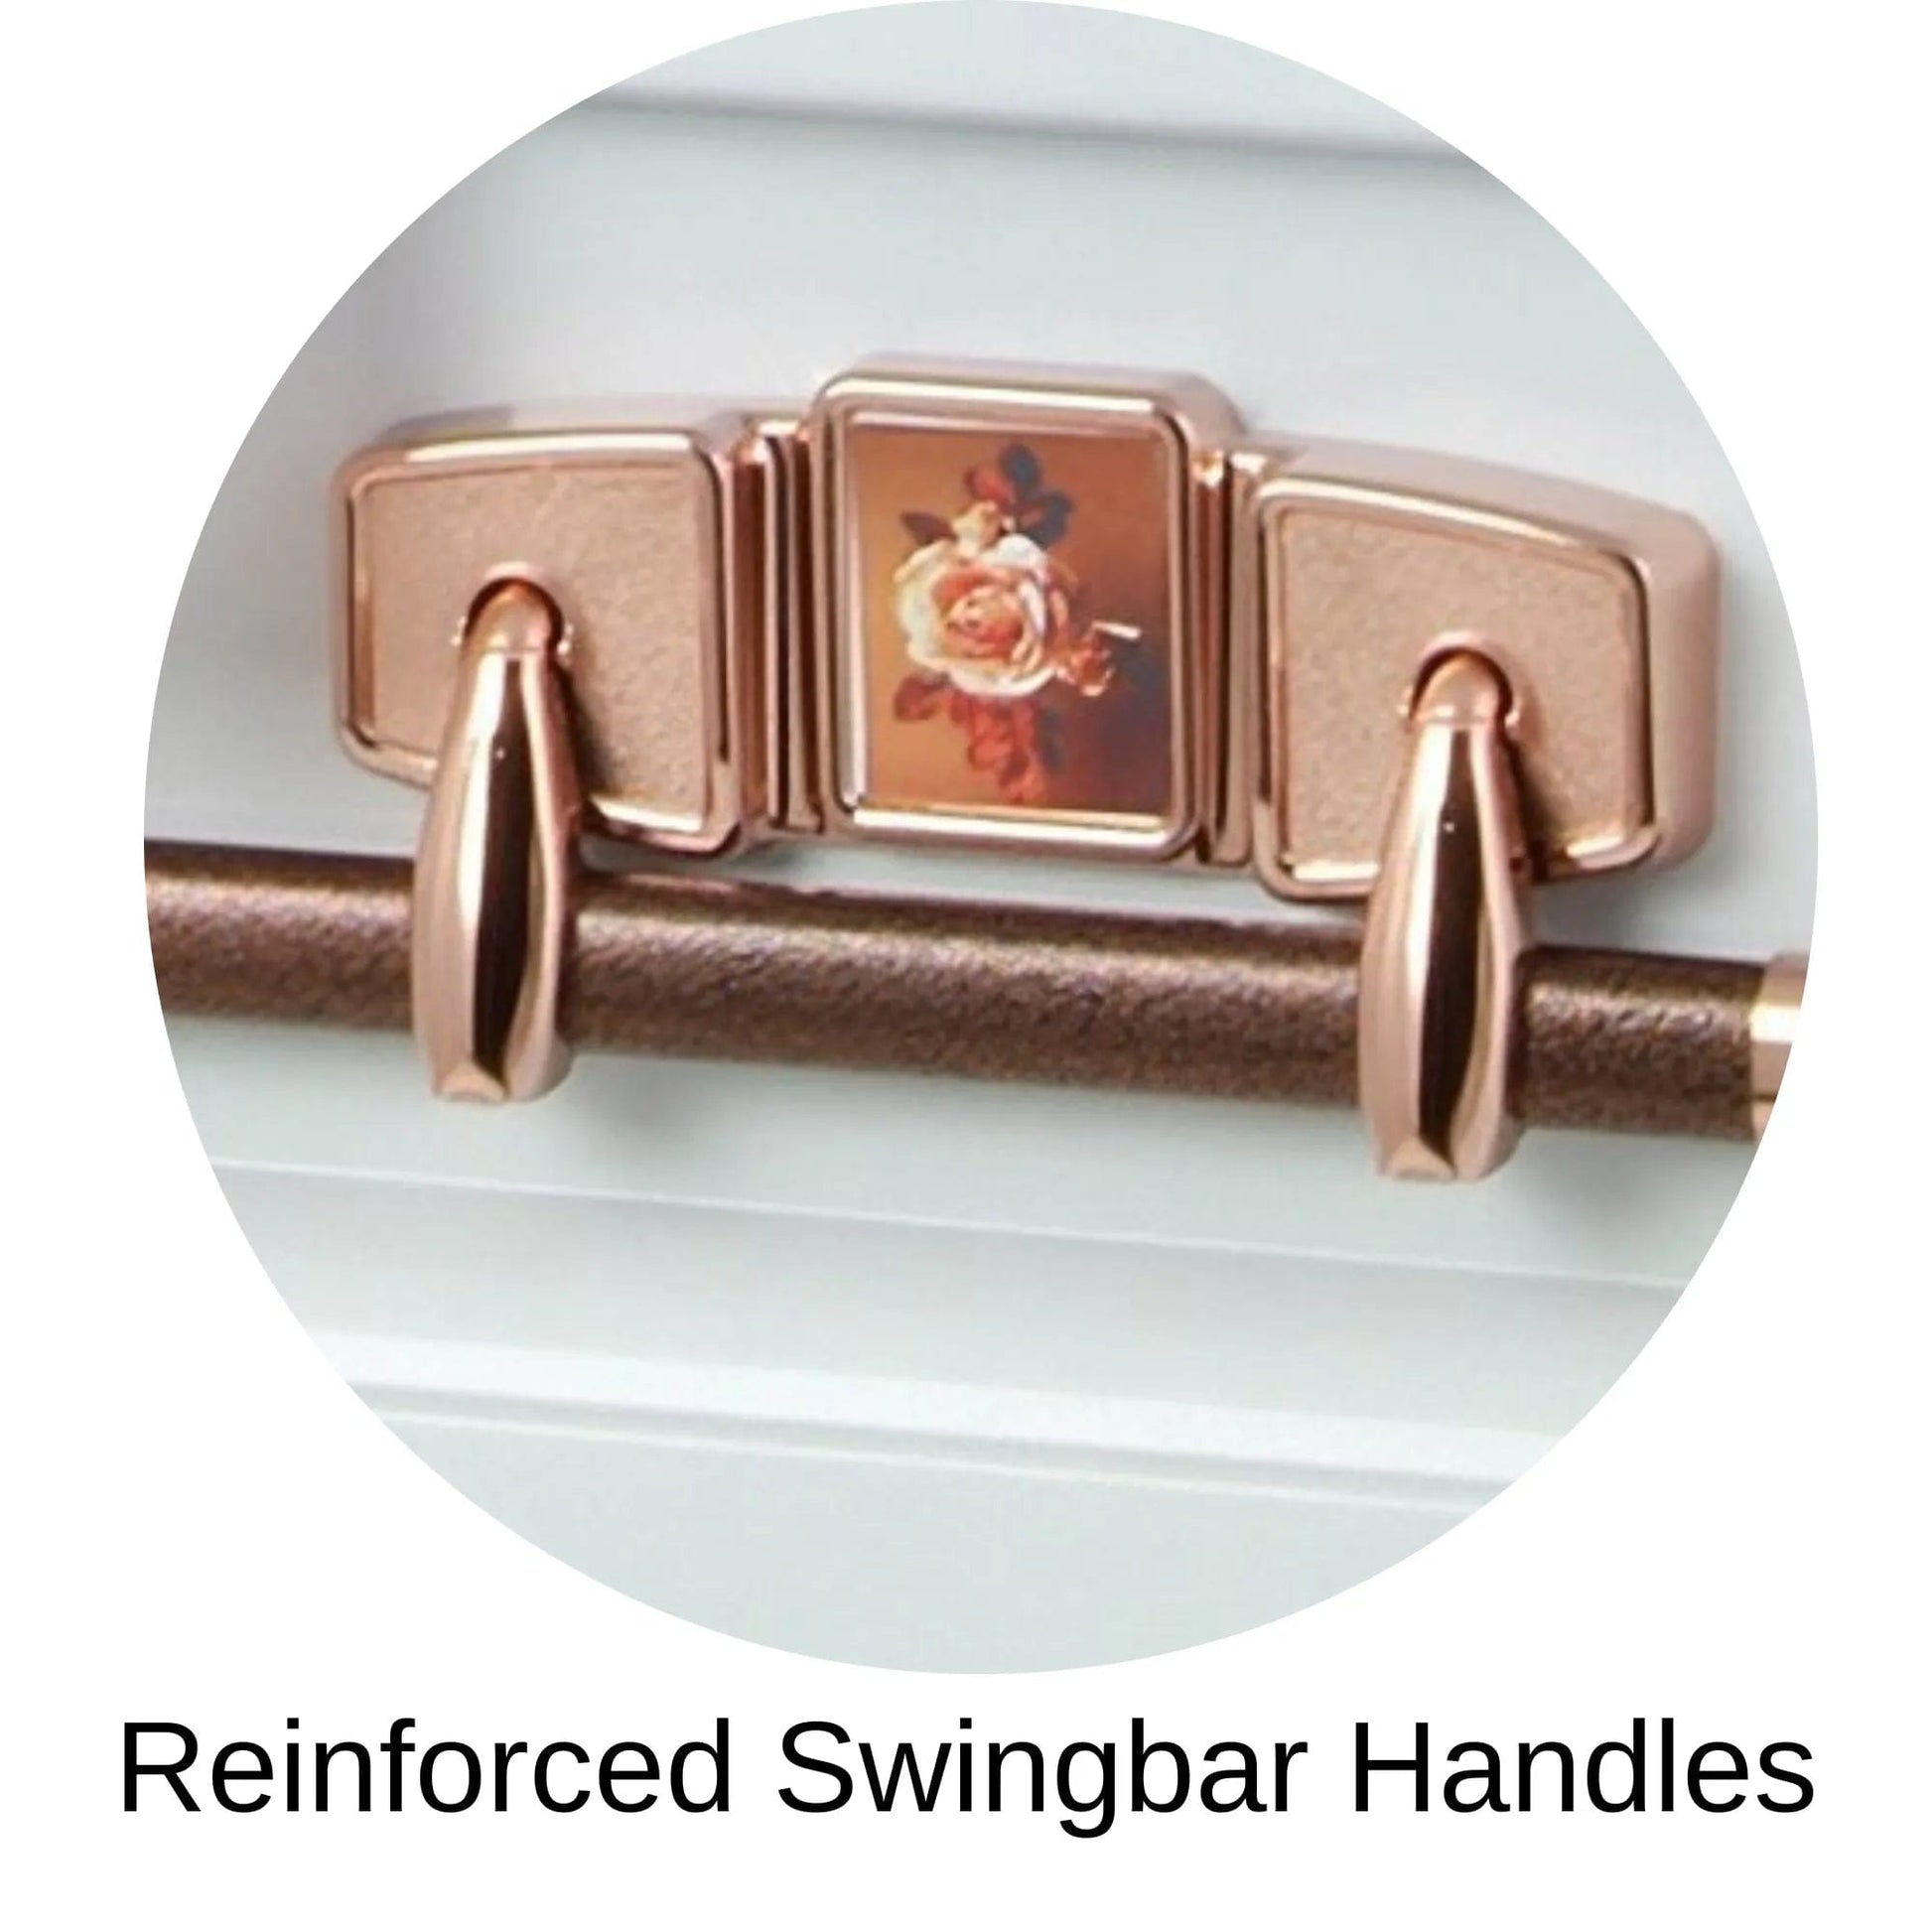 Reinforced Swingbar Handles Of Paris Rose Steel Series Casket 